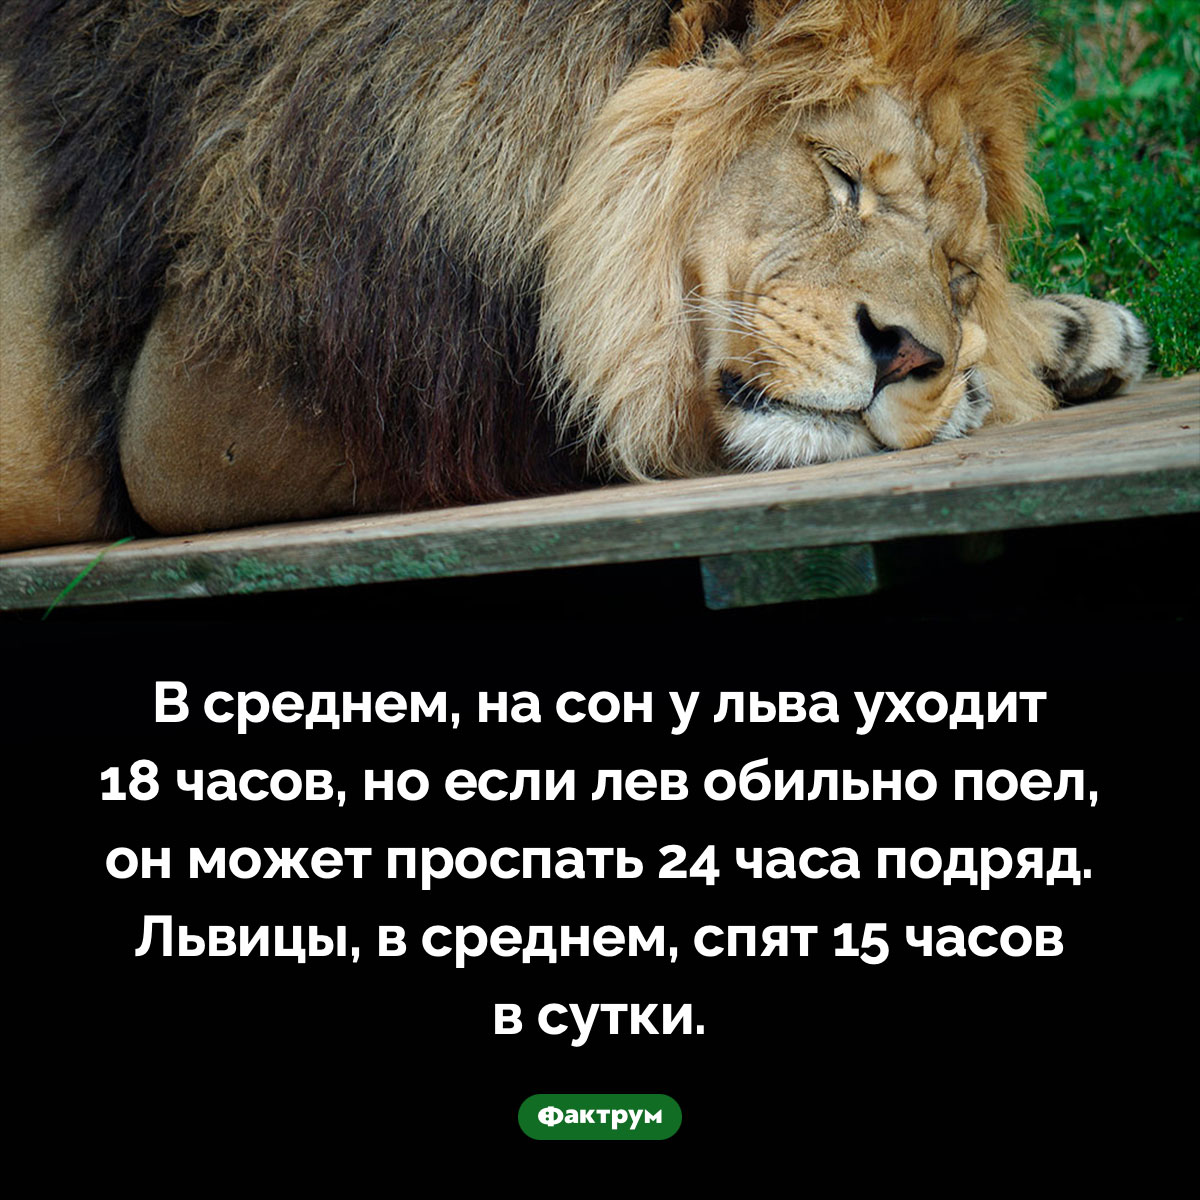 Сытый лев может проспать 24 часа подряд. В среднем, на сон у льва уходит 18 часов, но если лев обильно поел, он может проспать 24 часа подряд. Львицы, в среднем, спят 15 часов в сутки.